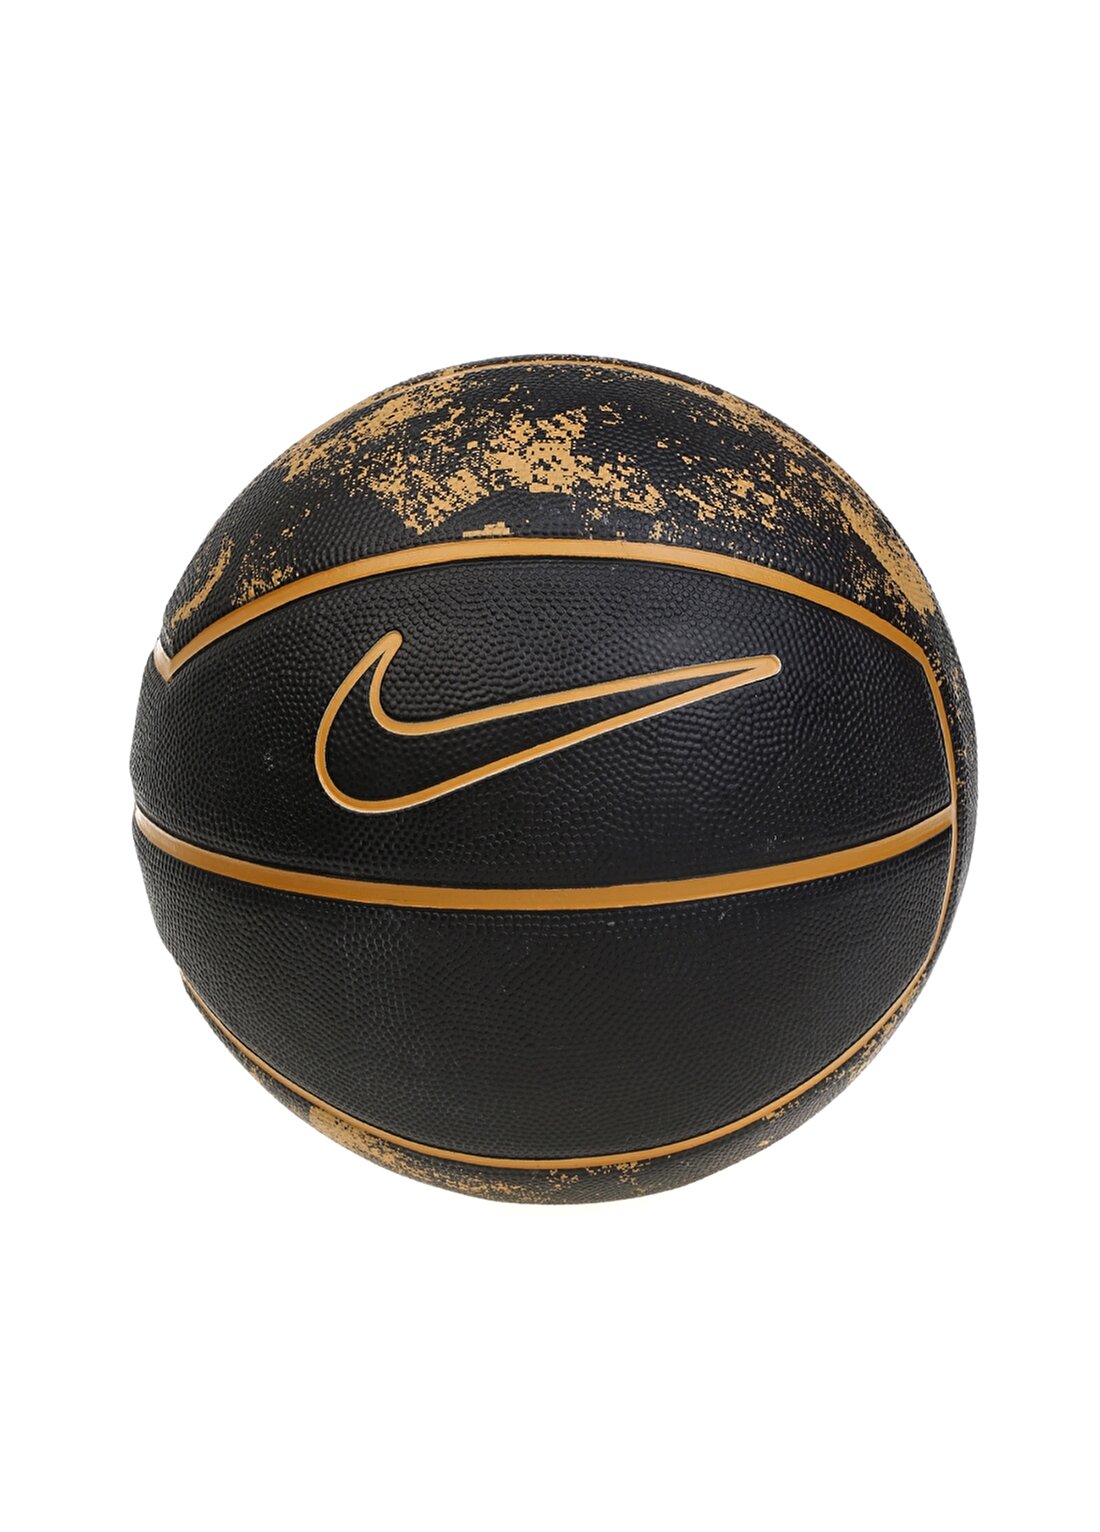 Nike Aksesuar N.KI.12.044 Siyah Unisex Basketbol Topu